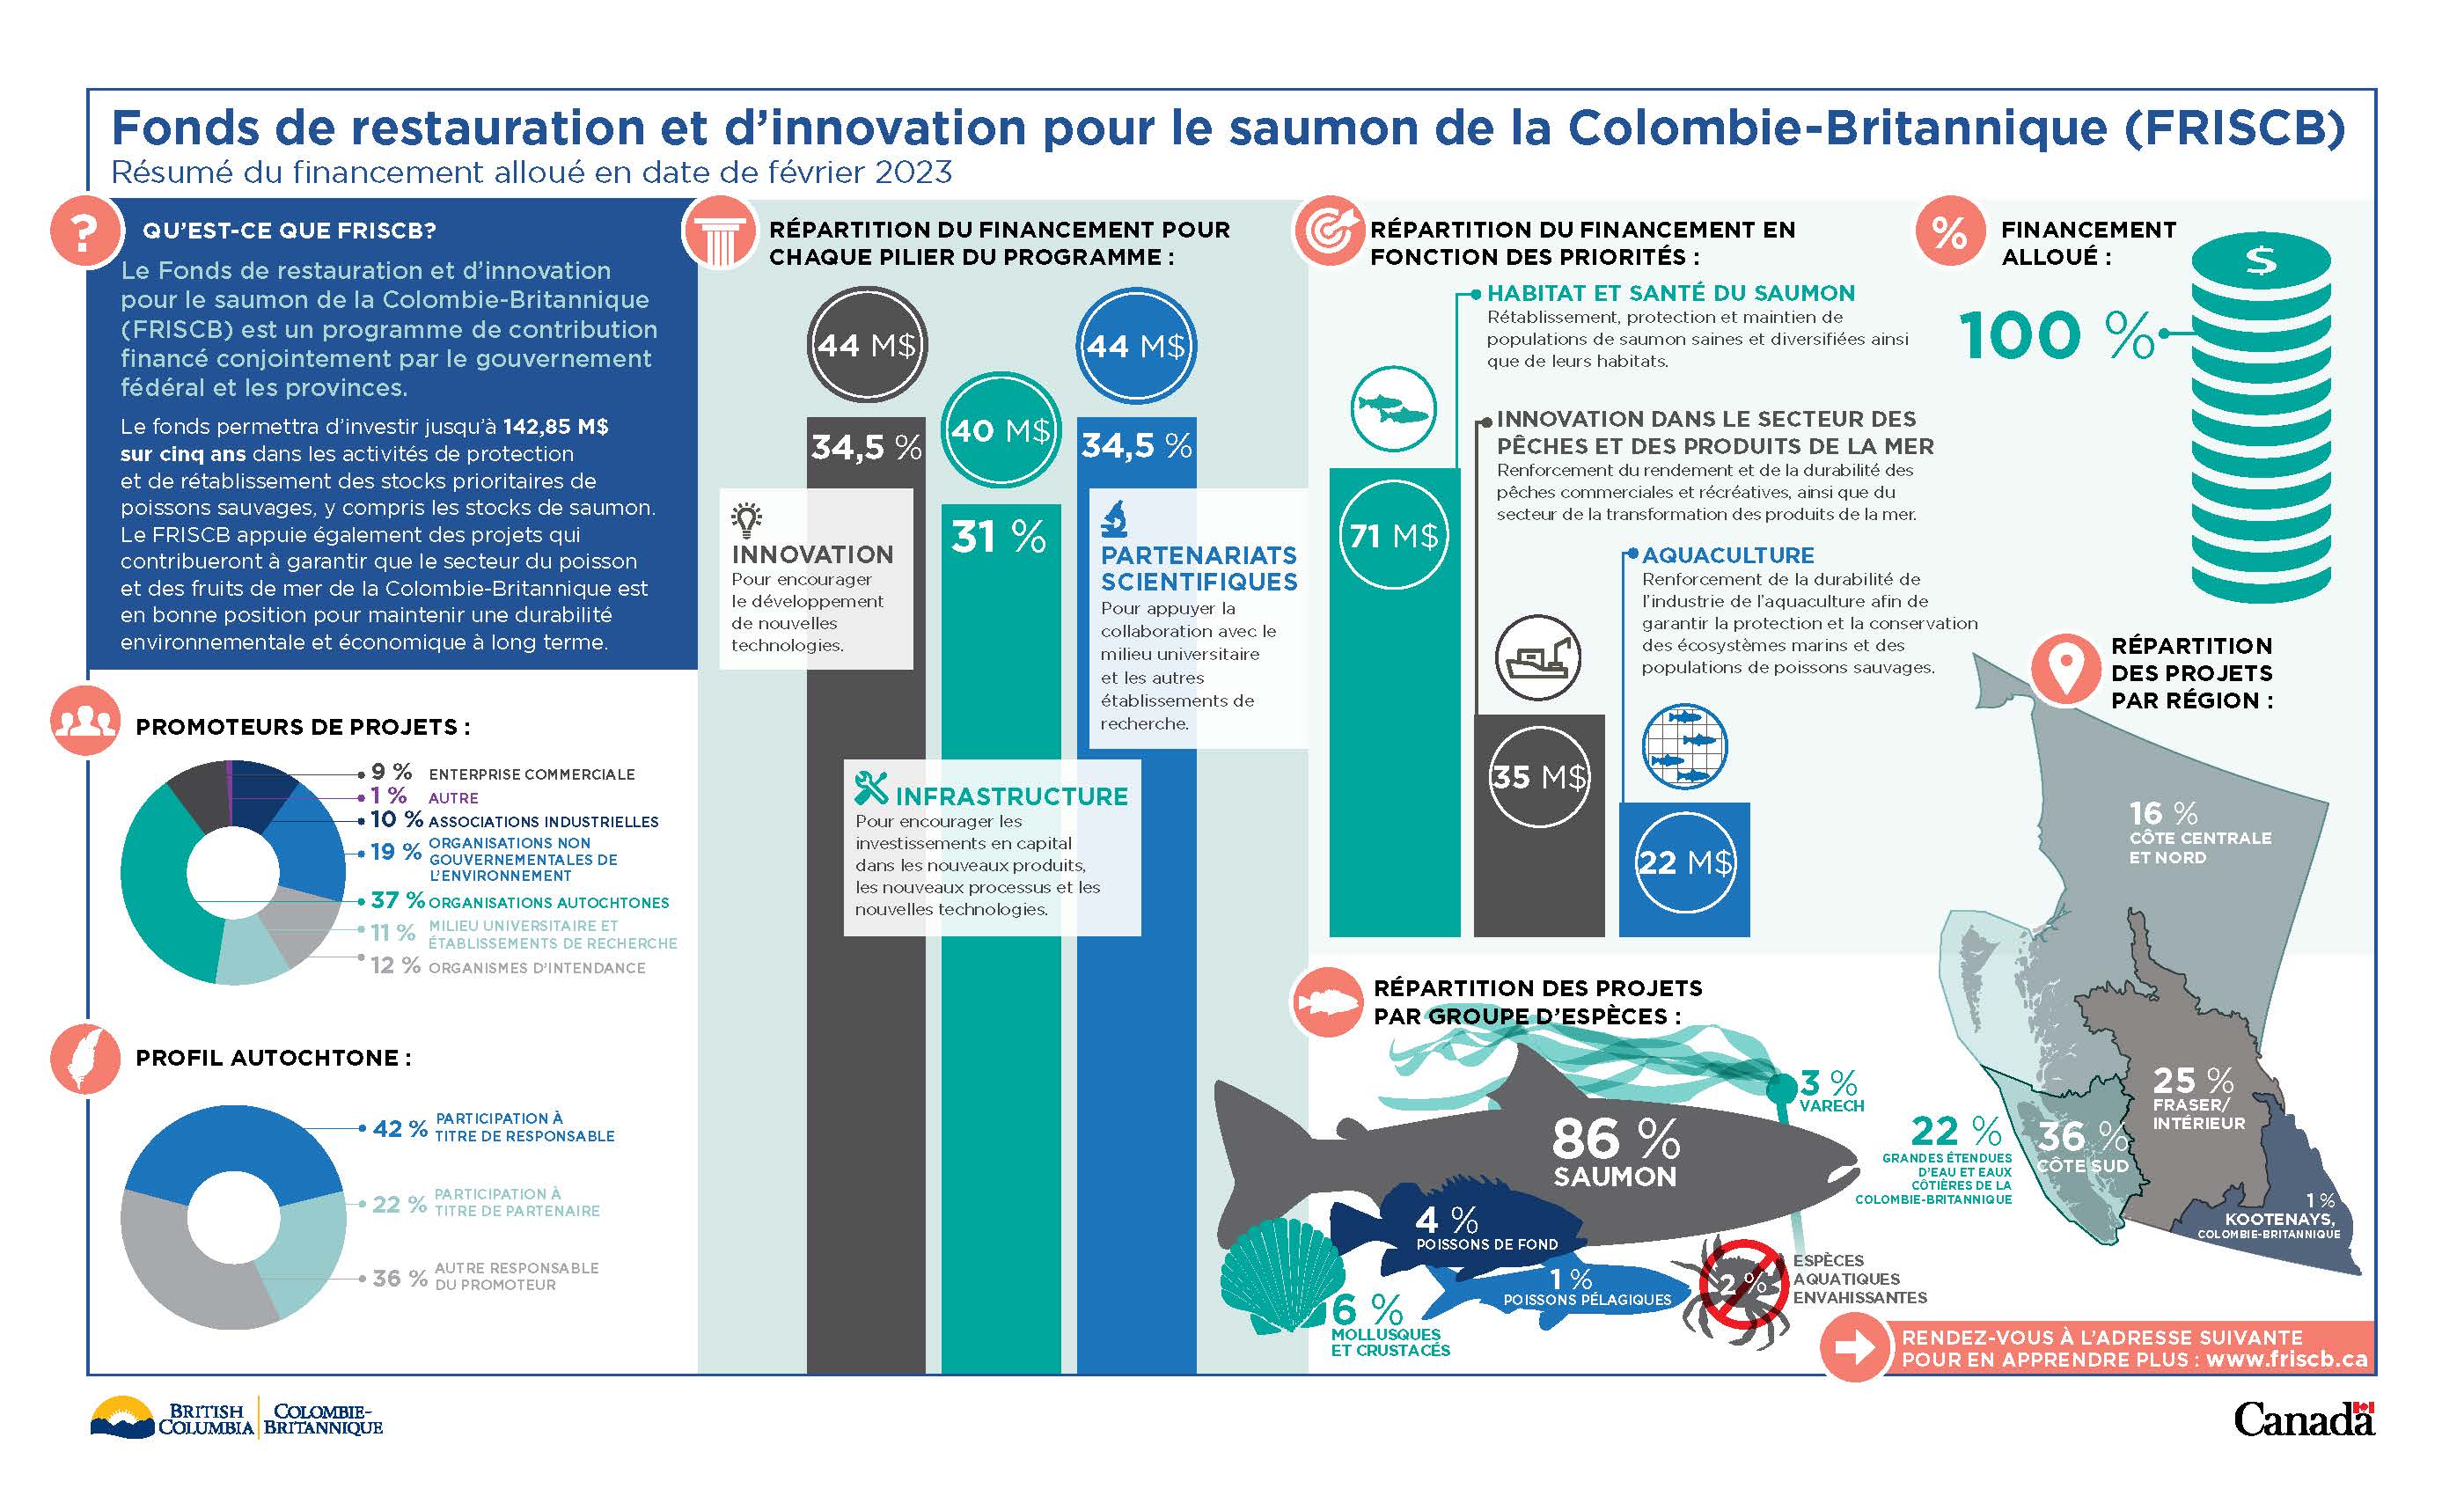 Infographie : Résumé du financement accordé au Fonds de restauration et d’innovation pour le saumon de la Colombie-Britannique en date de septembre 2021